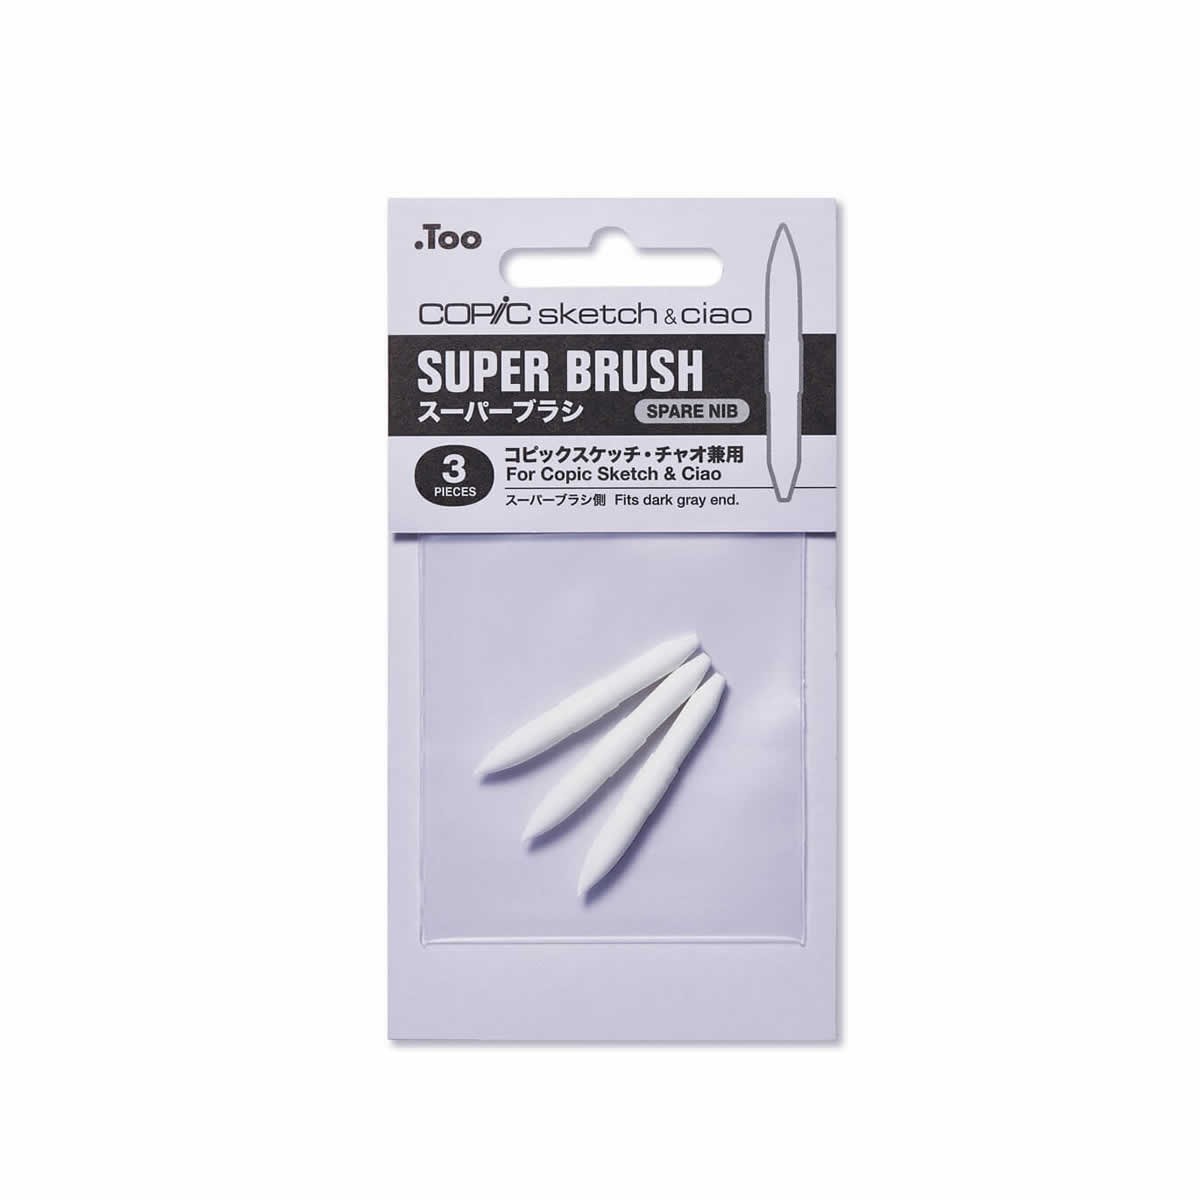 Copic Super Brush nib